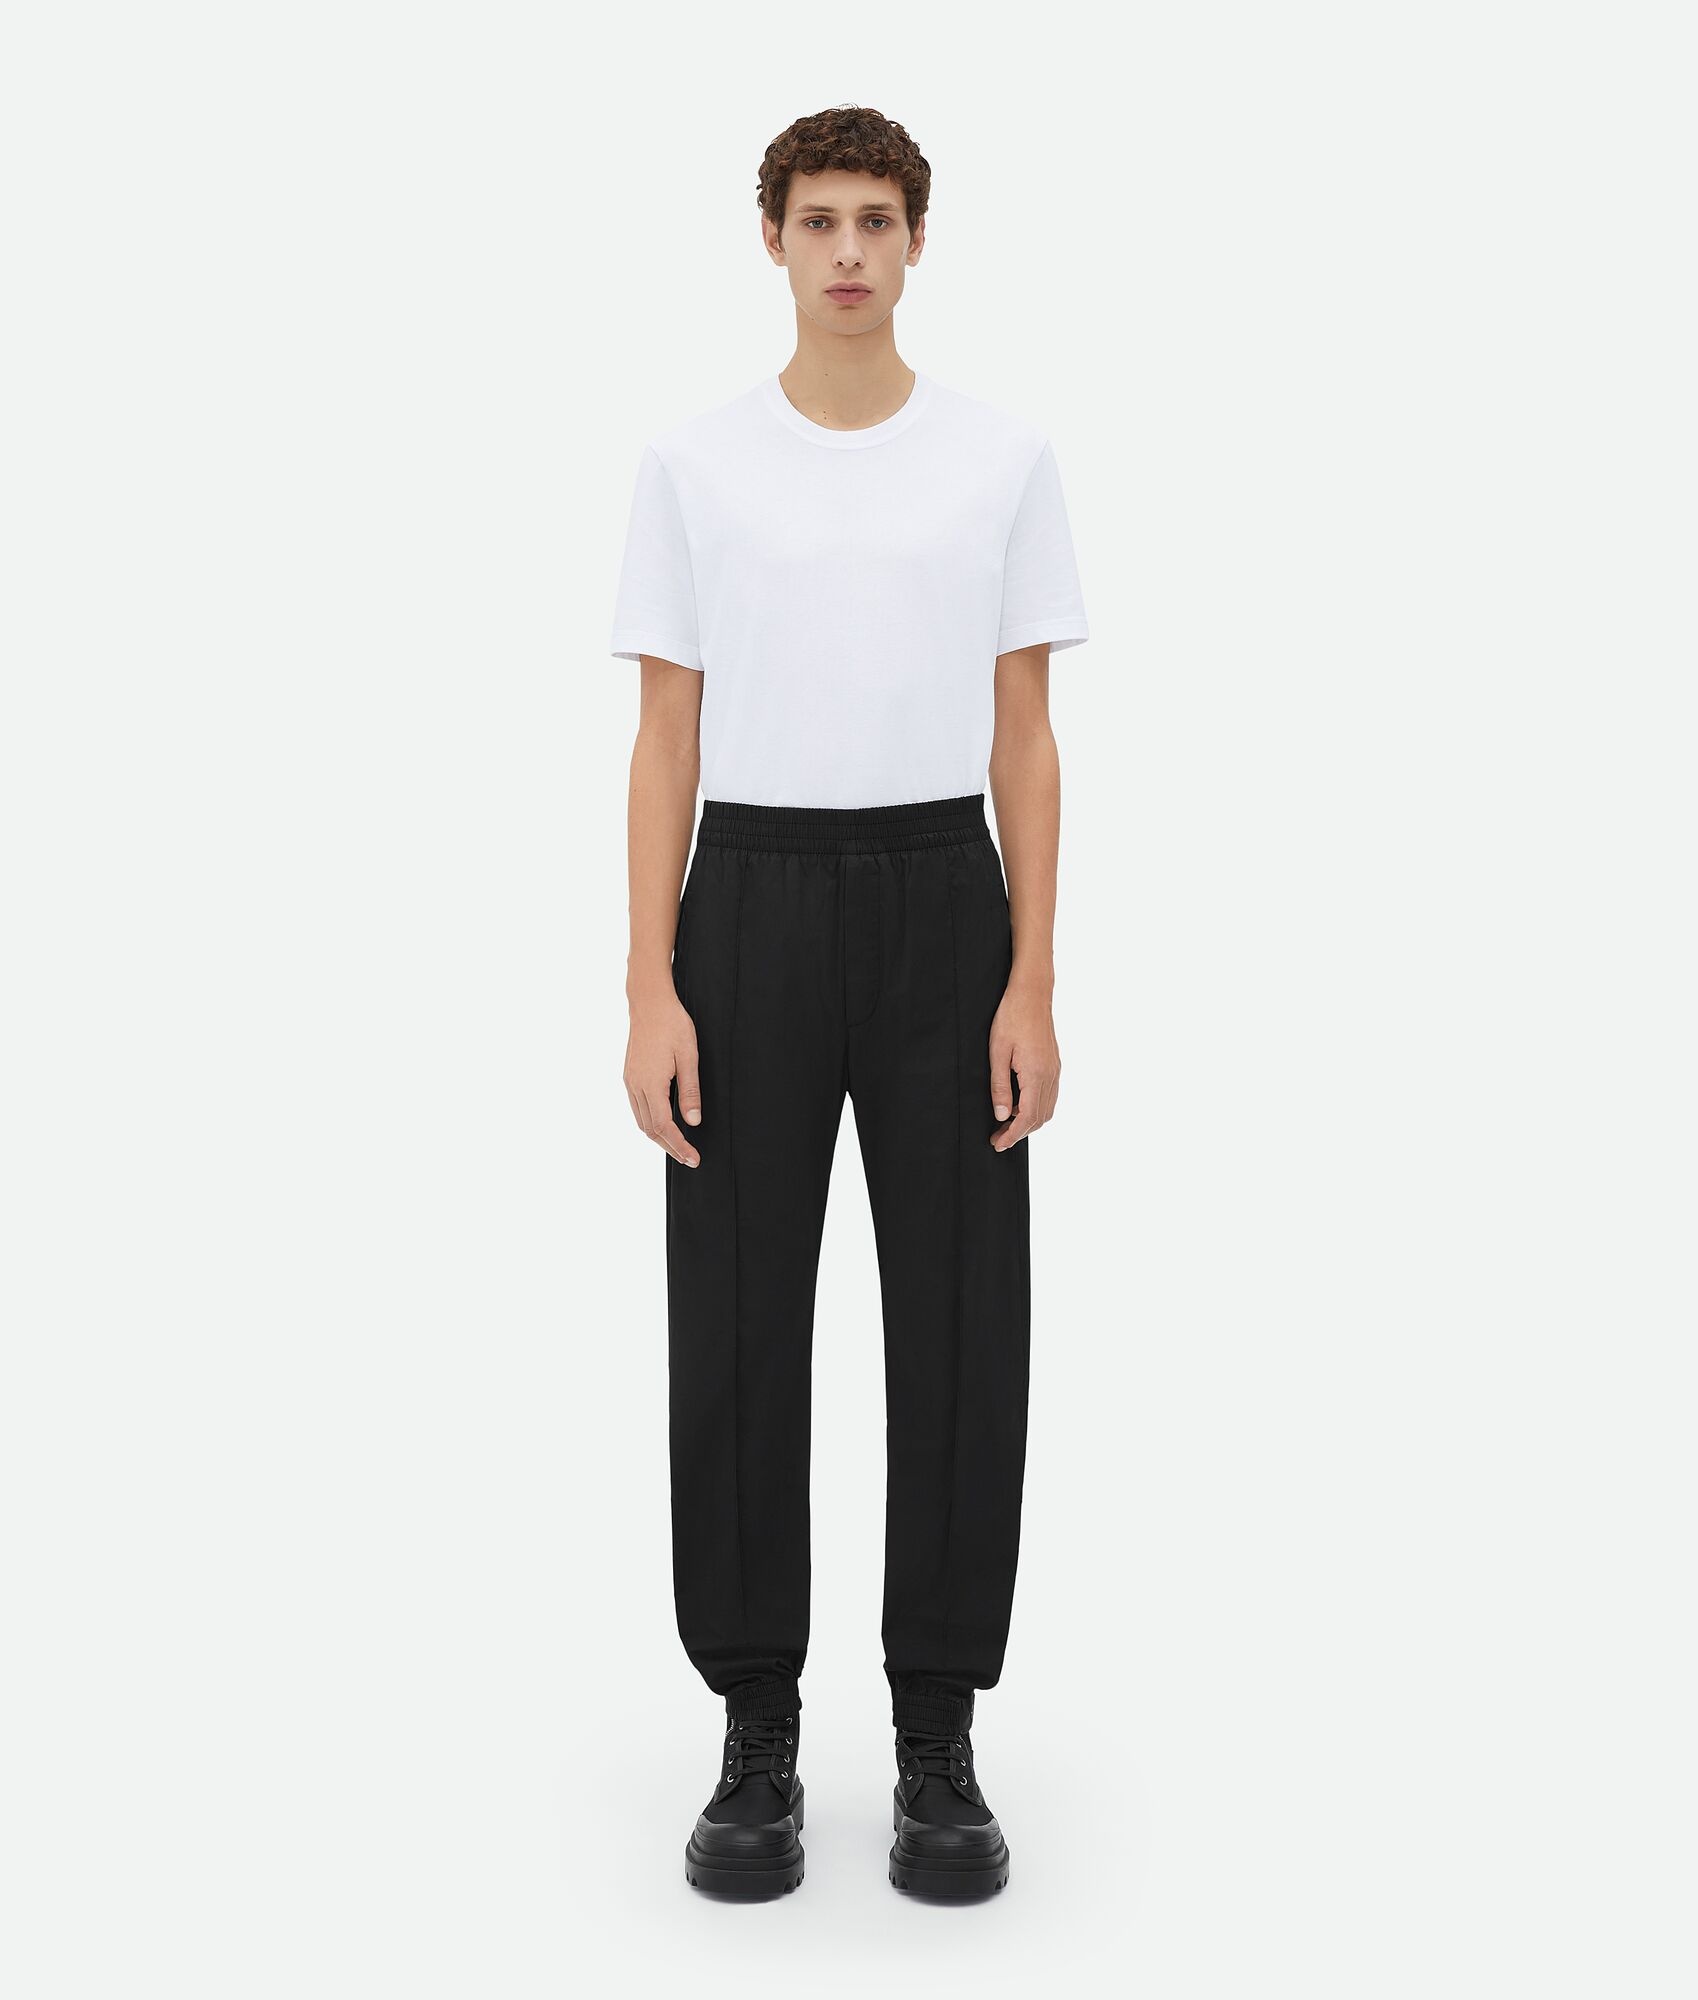 cotton jogger pants - 1